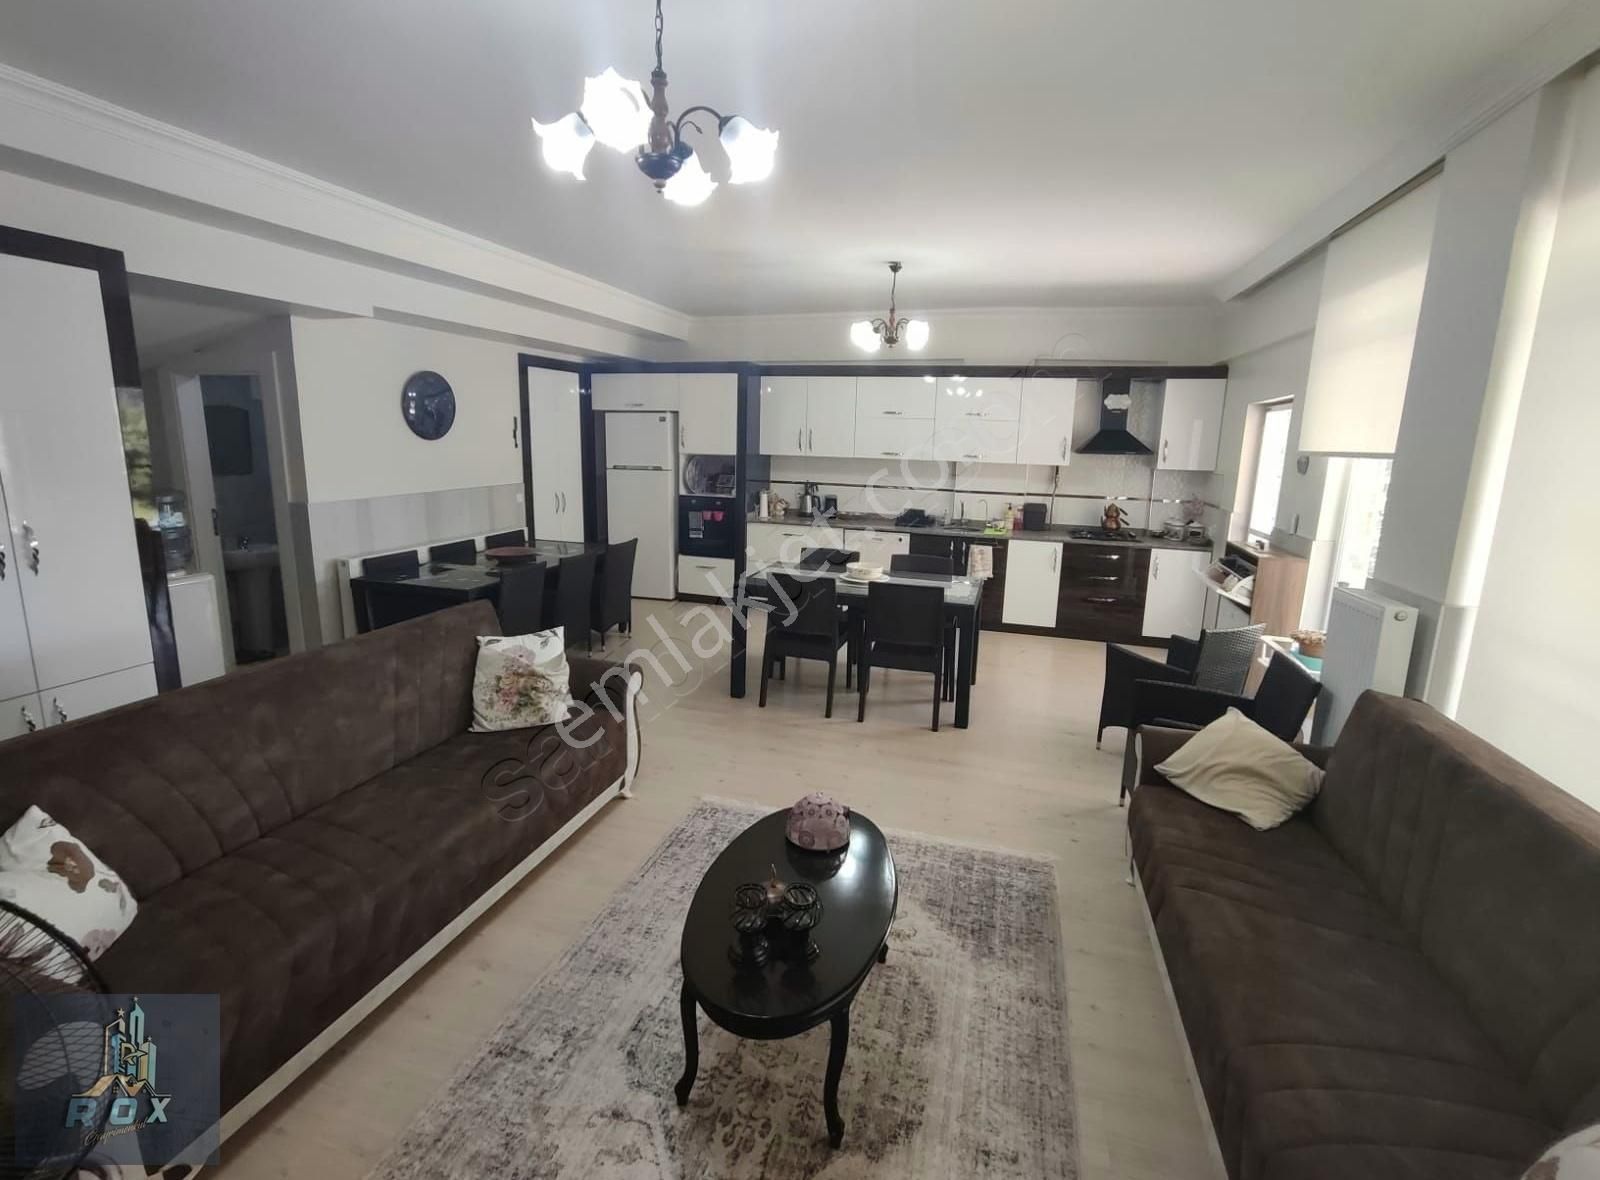 Oğuzeli Körkün Satılık Villa ROX GAYRİMENKUL'DEN 3+1 SIFIR MASRAFSIZ,EŞYALI SATILIK VİLLA